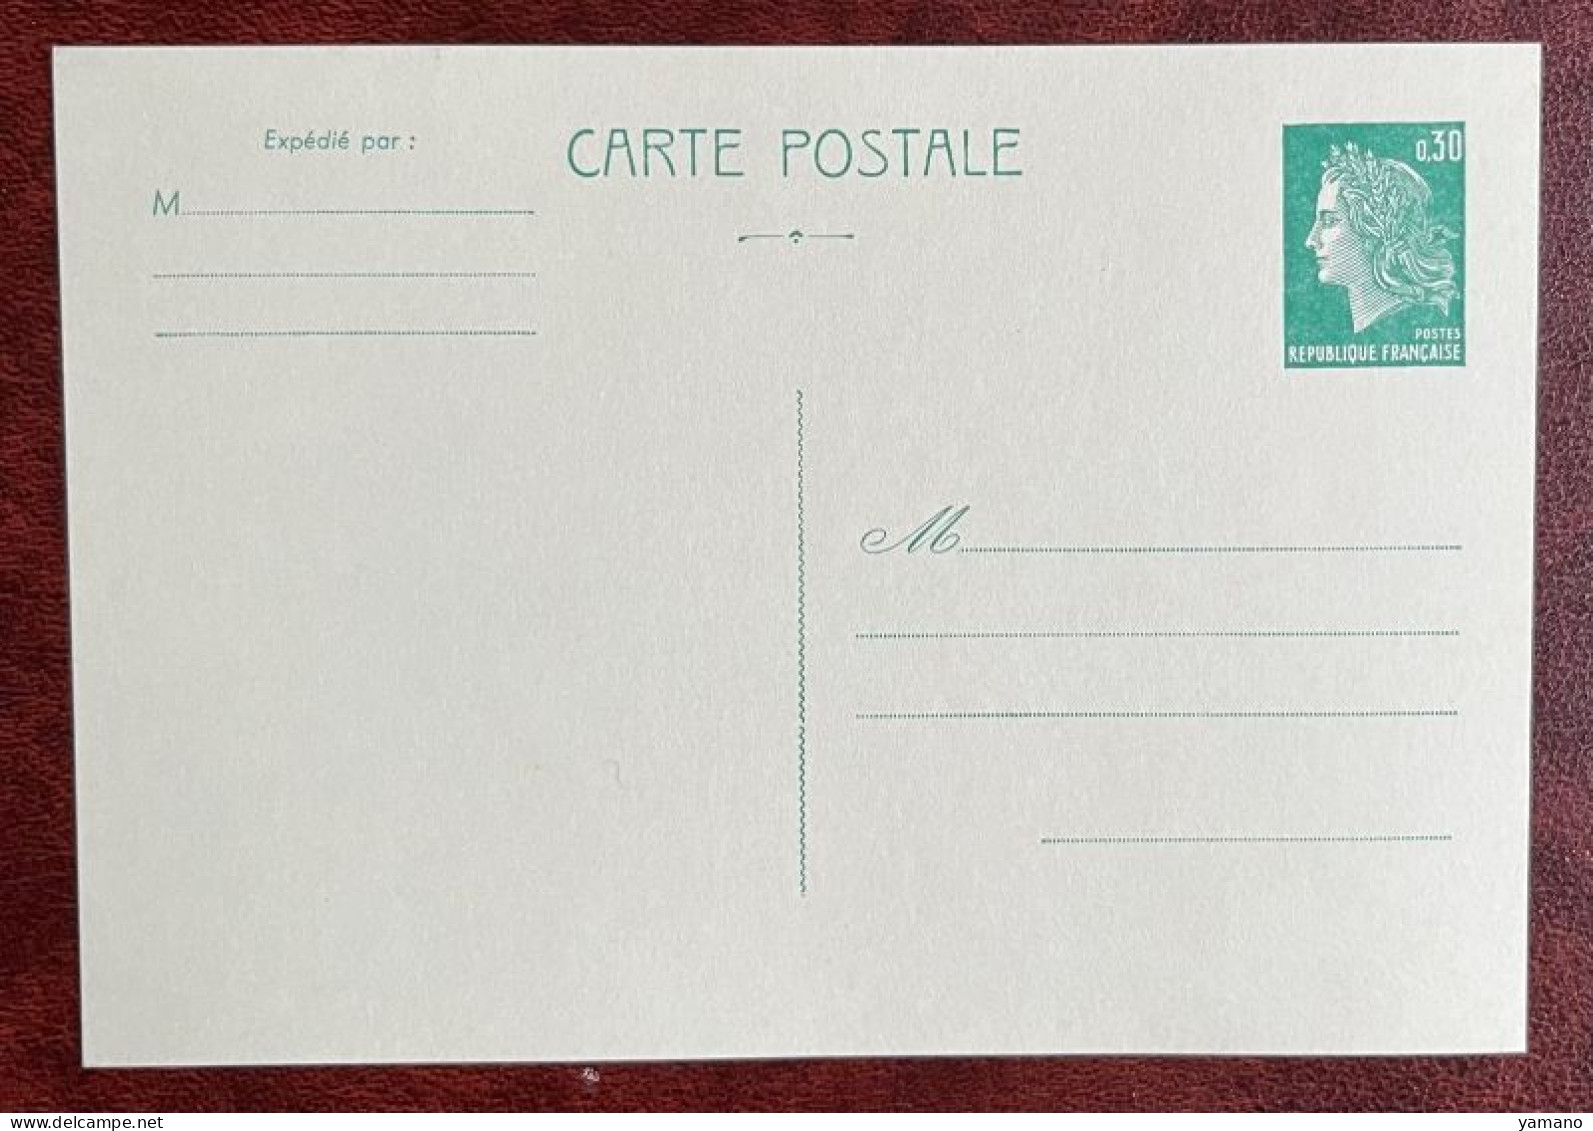 France 1969/73 -  Entier Postal Neuf  CHEFFER  0.30 F Recto Divisé  - Yvt  1611 CP1 - Standaardpostkaarten En TSC (Voor 1995)